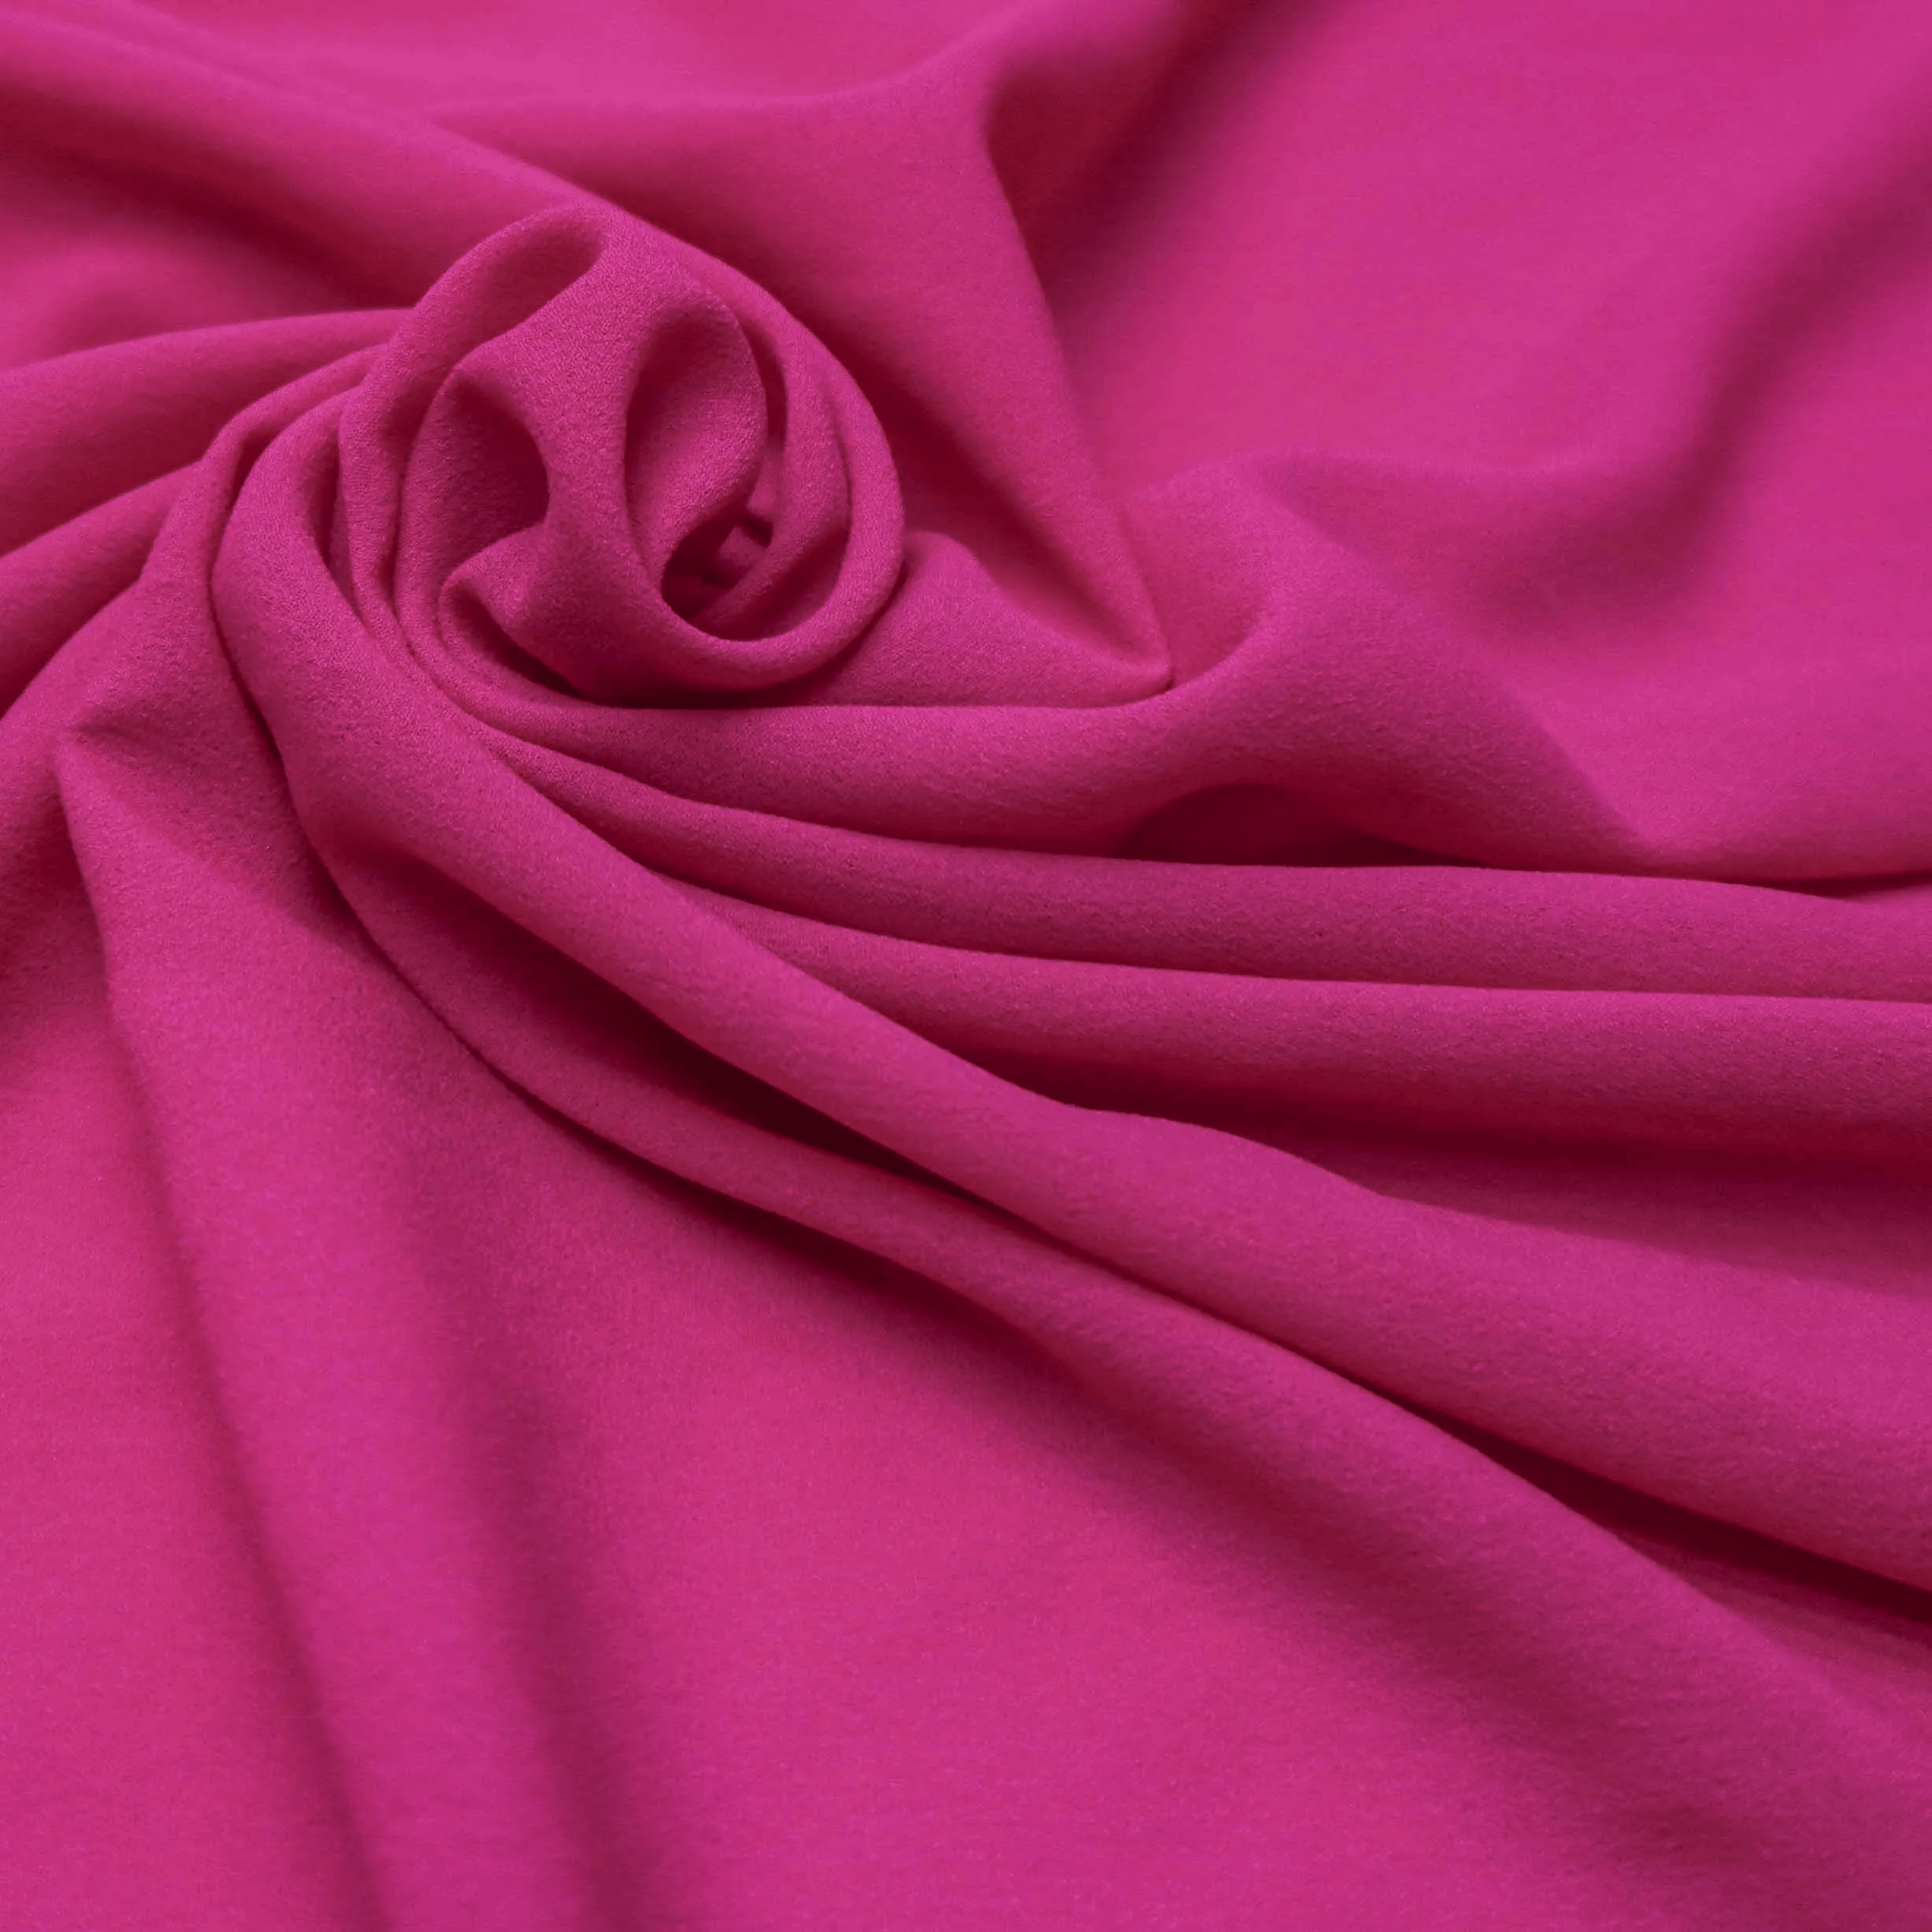 Tecido Musseline Creponada Rosa Choque - Empório dos Tecidos 